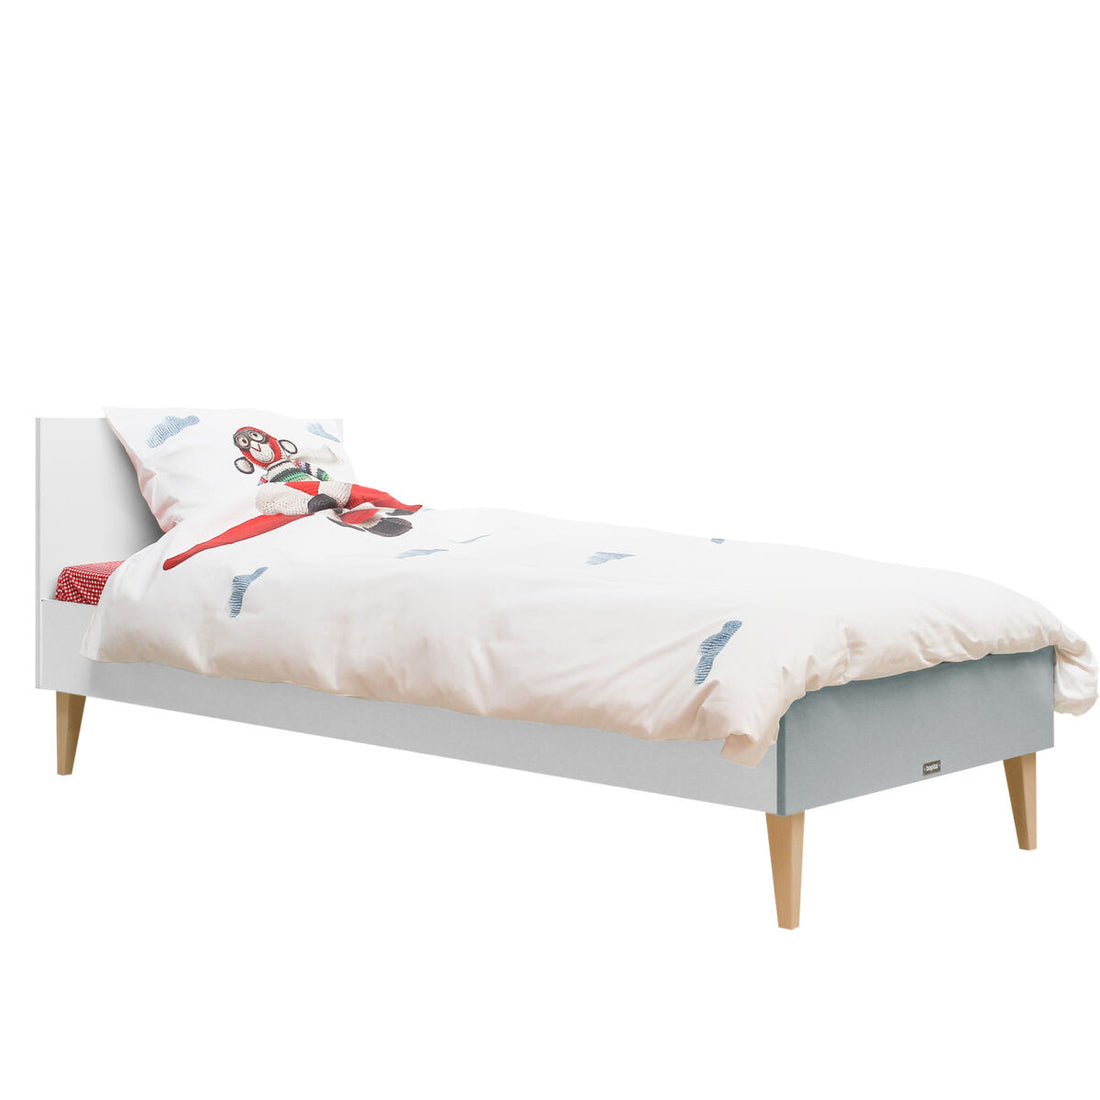 bopita-bed-90x200-emma-white-grey-with-bed-base-bopt-1709020-bopt-15420961-set- (6)